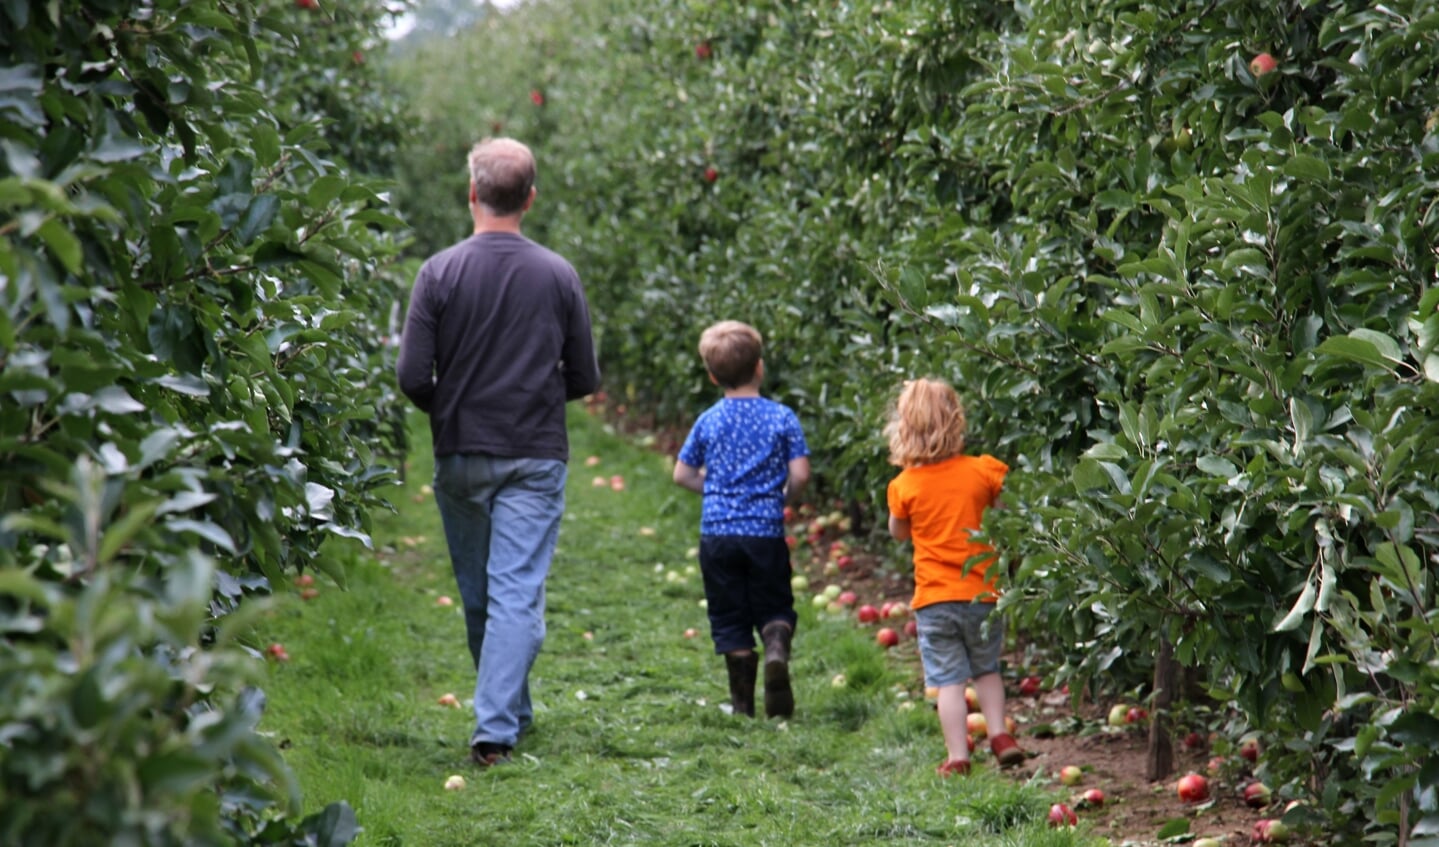 Appels plukken in de boomgaard van Fruitbedrijf Horstink. Foto: Liesbeth Spaansen